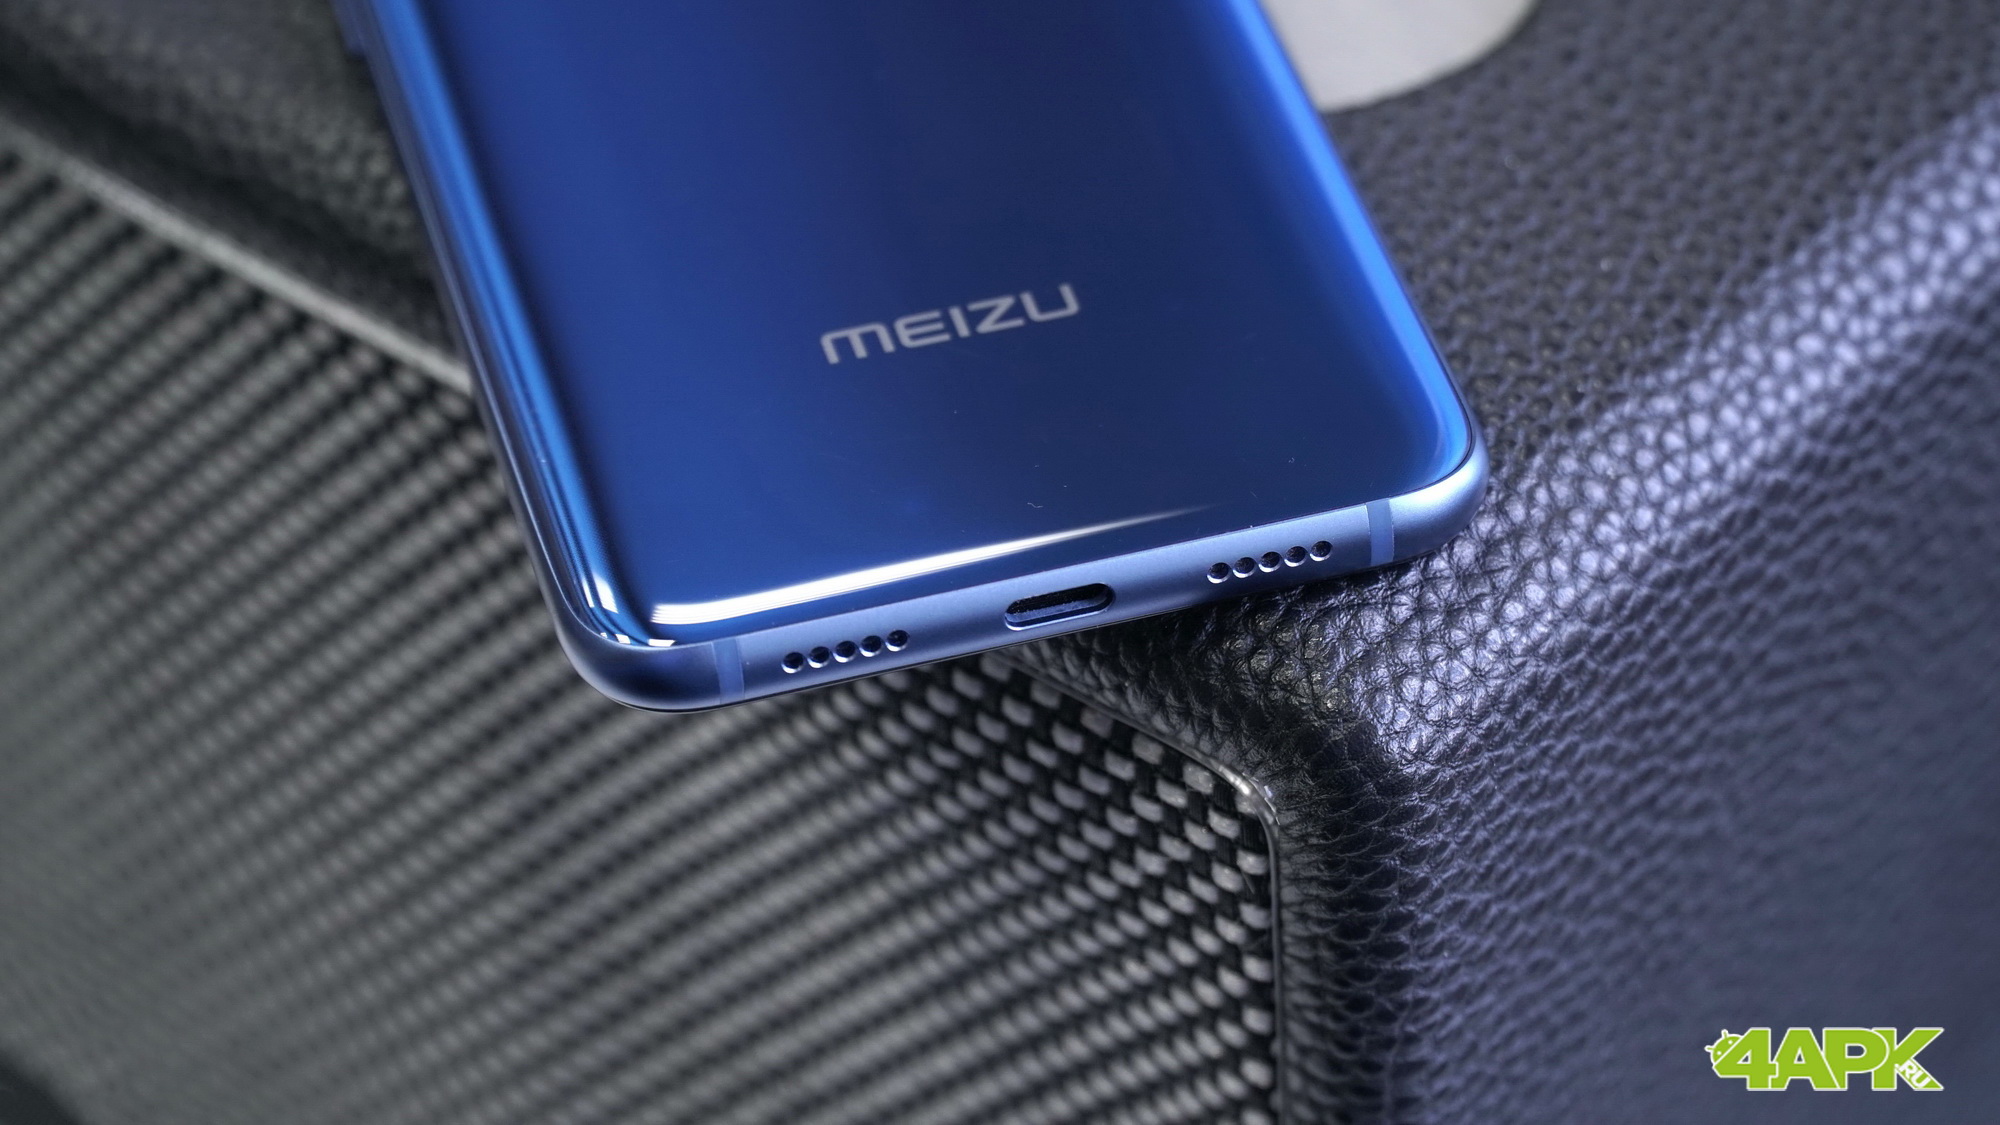  Обзор Meizu X8: доступный игровой смартфон Meizu  - meizu_x8_obzor_03